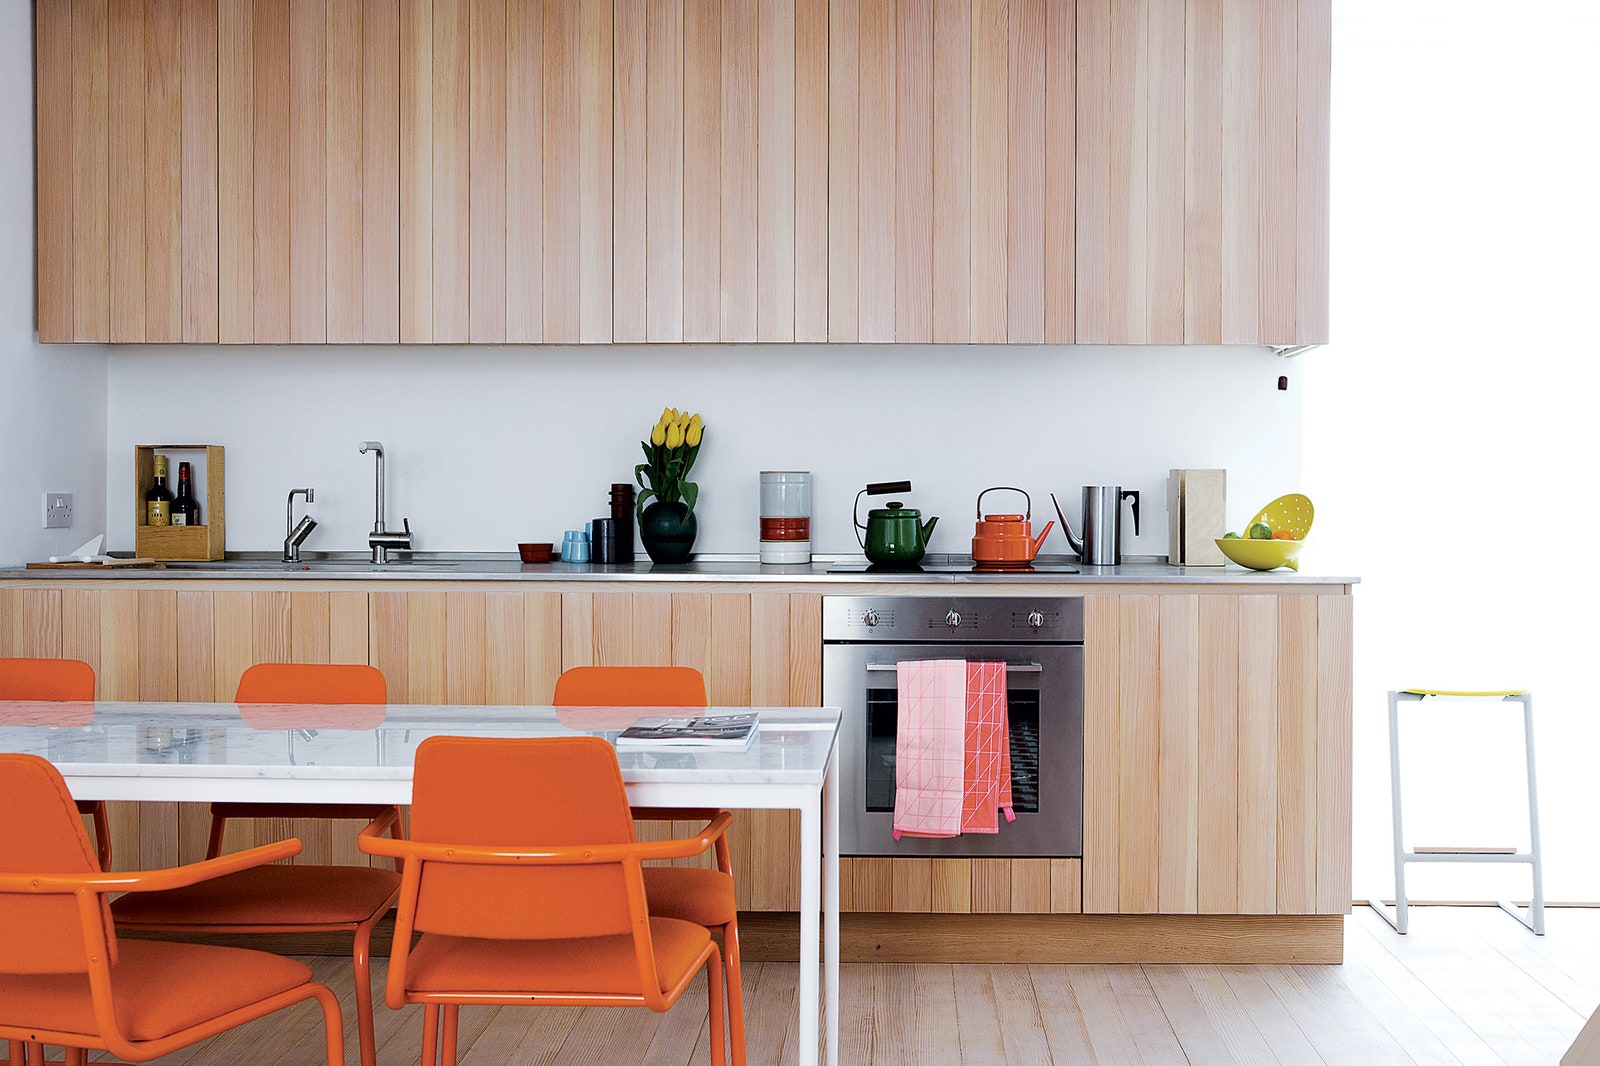 Кухня. Фасады кухонных шкафов сделаны из пихты. Хозяйка коллекционирует чайники оранжевый и зеленый она купила в Дании.